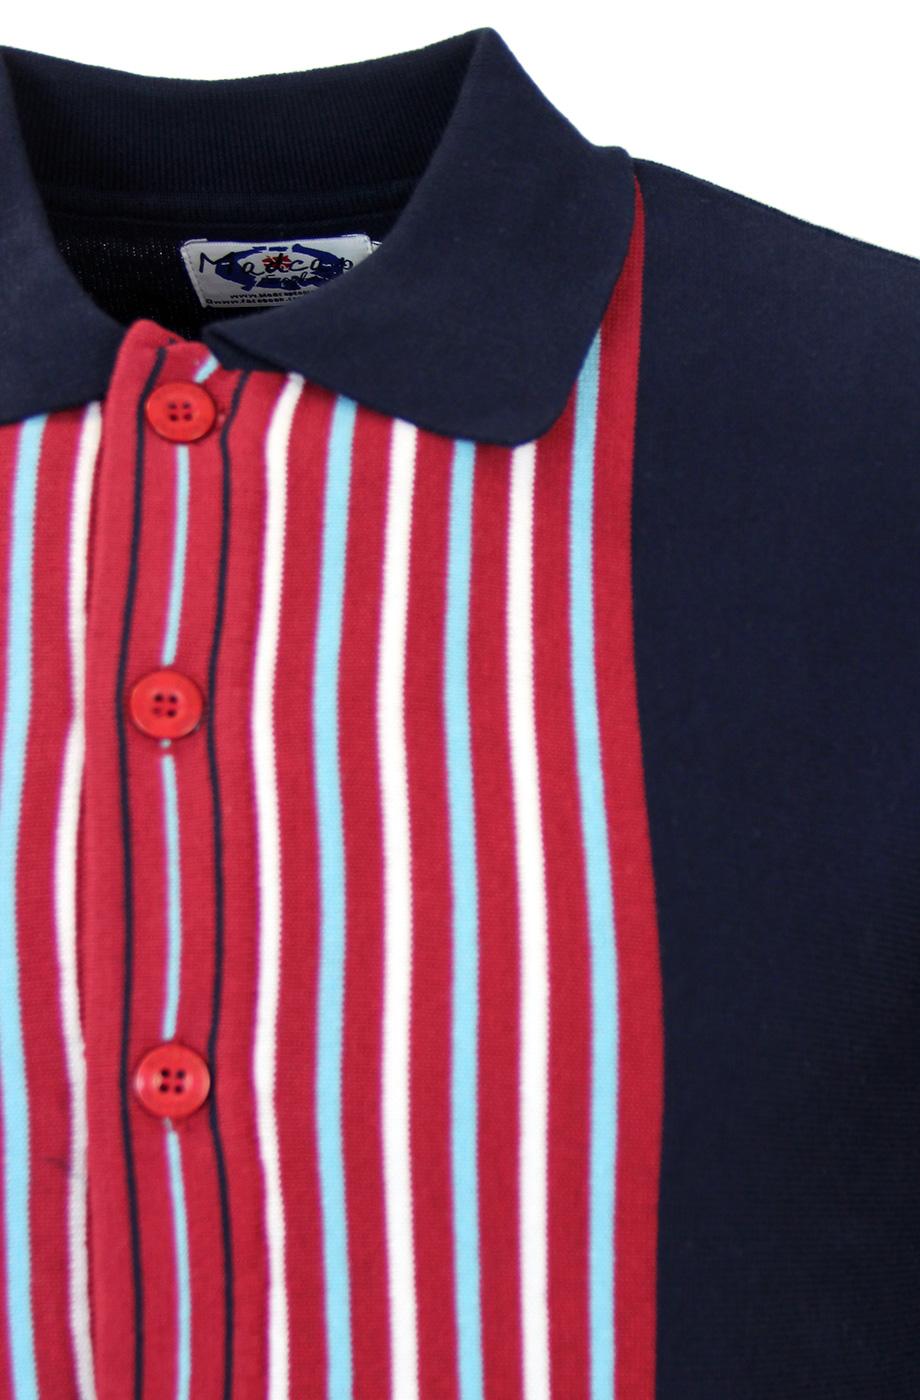 MADCAP ENGLAND Cassius Retro 60s Mod Candy Stripe Knit Polo Top